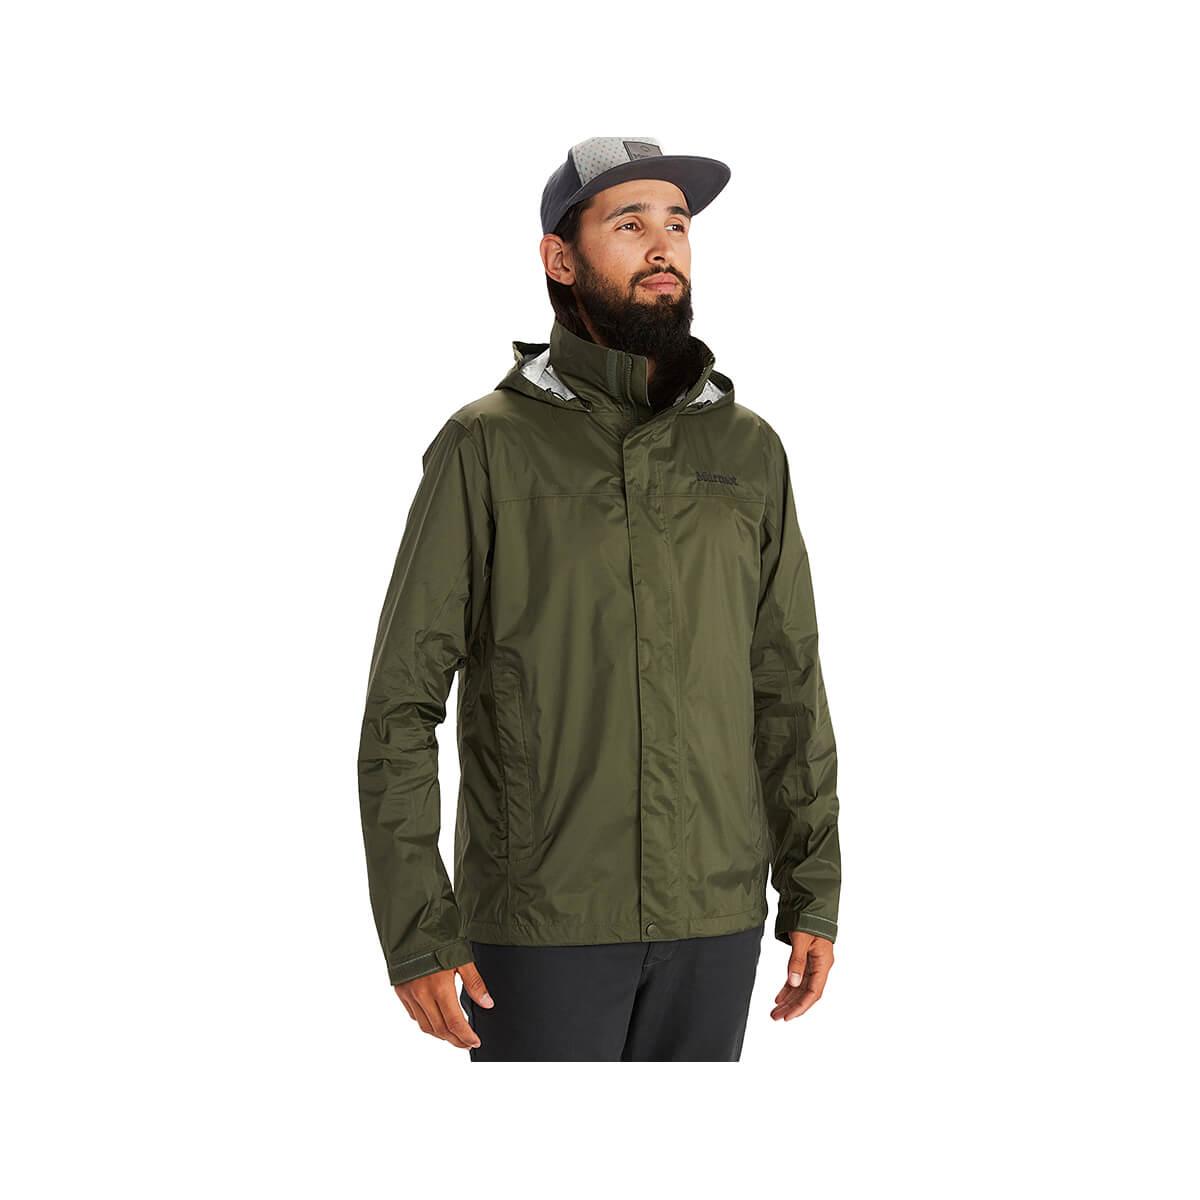 Mast General Store | Men's PreCip Eco Jacket